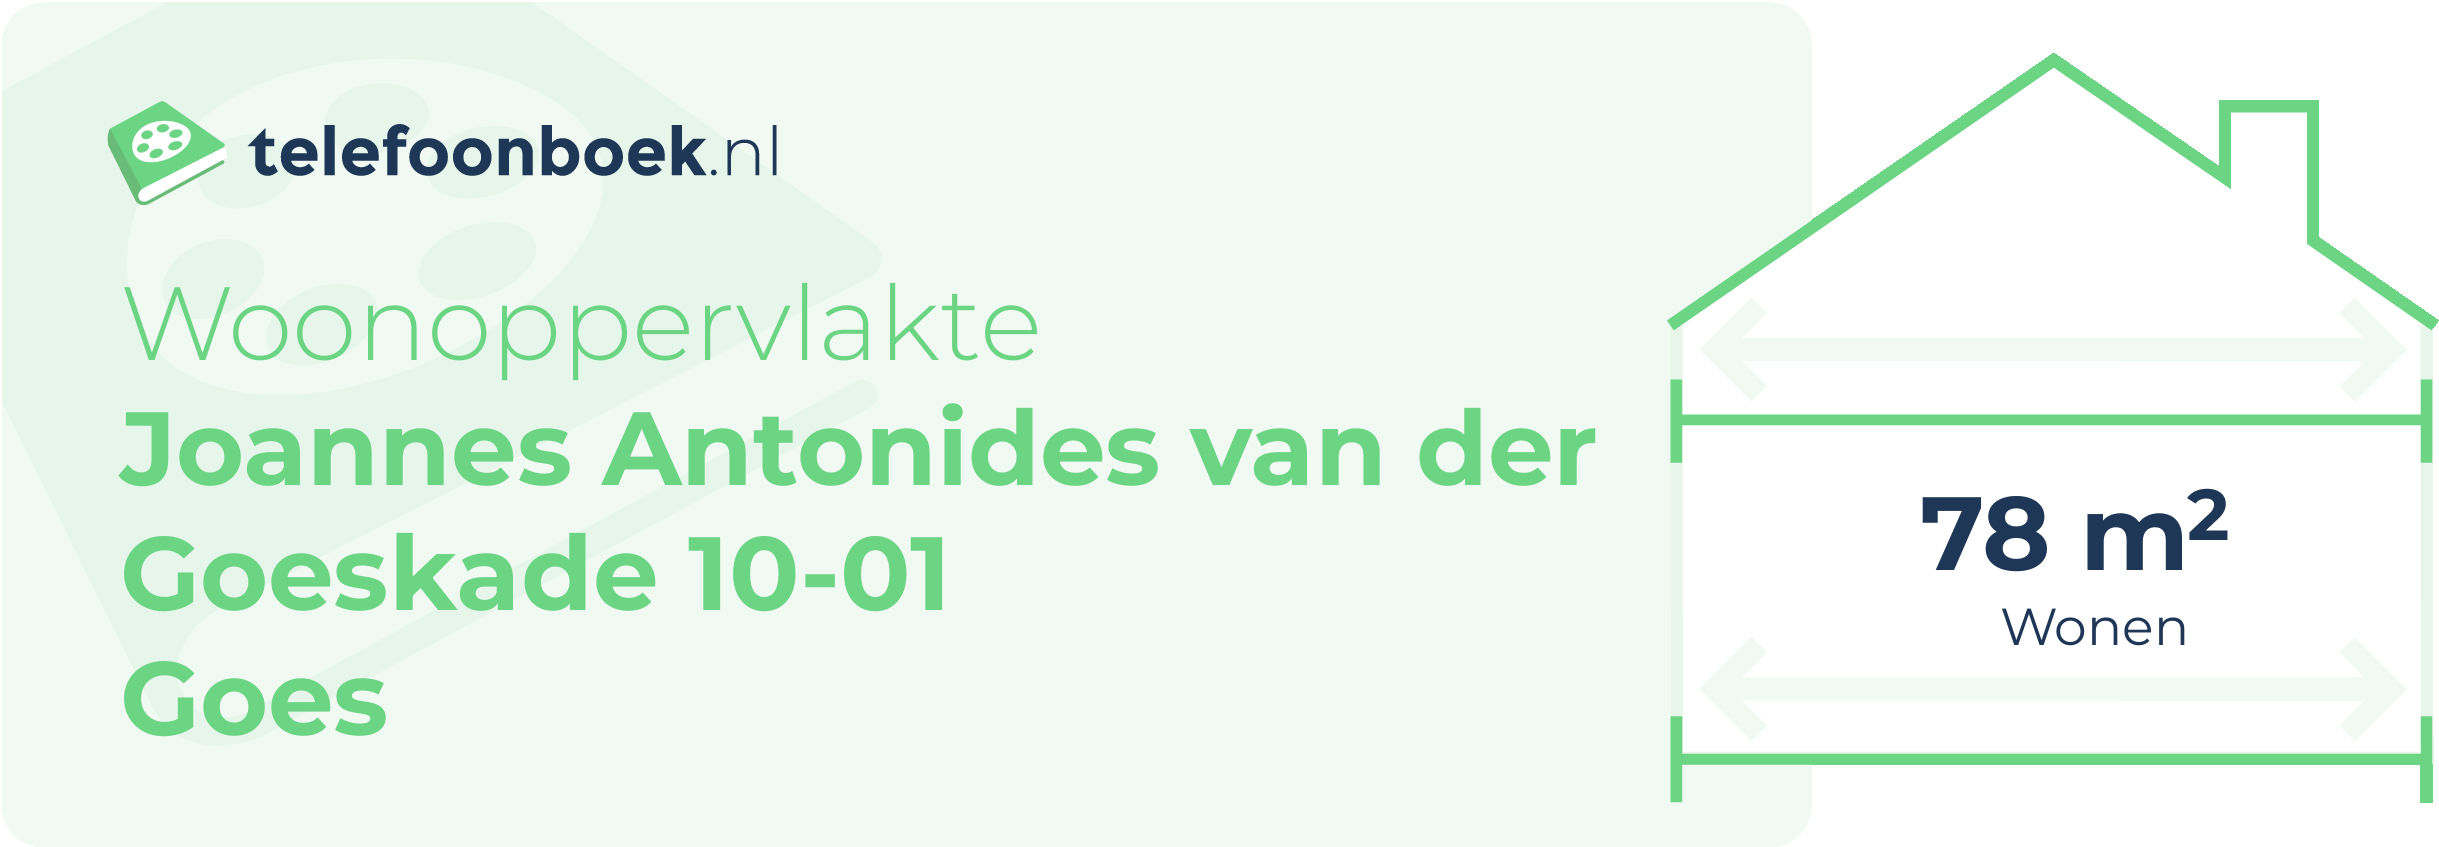 Woonoppervlakte Joannes Antonides Van Der Goeskade 10-01 Goes